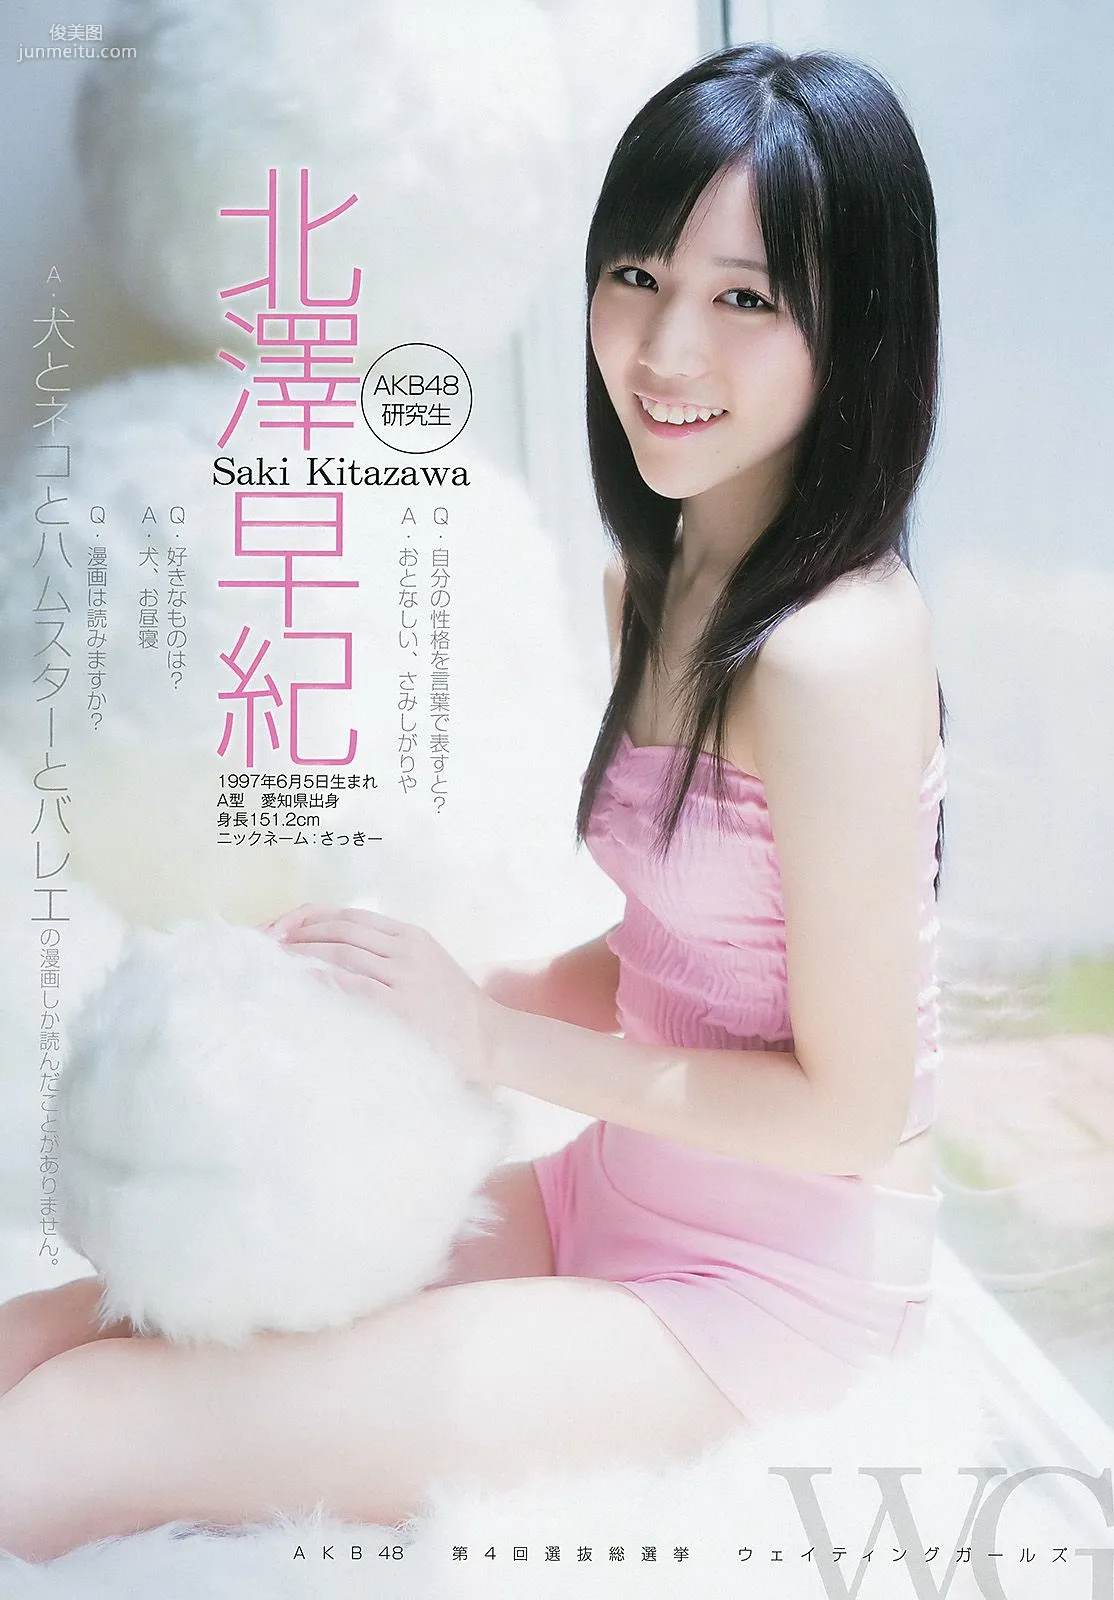 大島優子 乃木坂46 AKB48 ウェイティングガールズ [Weekly Young Jump] 2012年No.40 写真杂志19